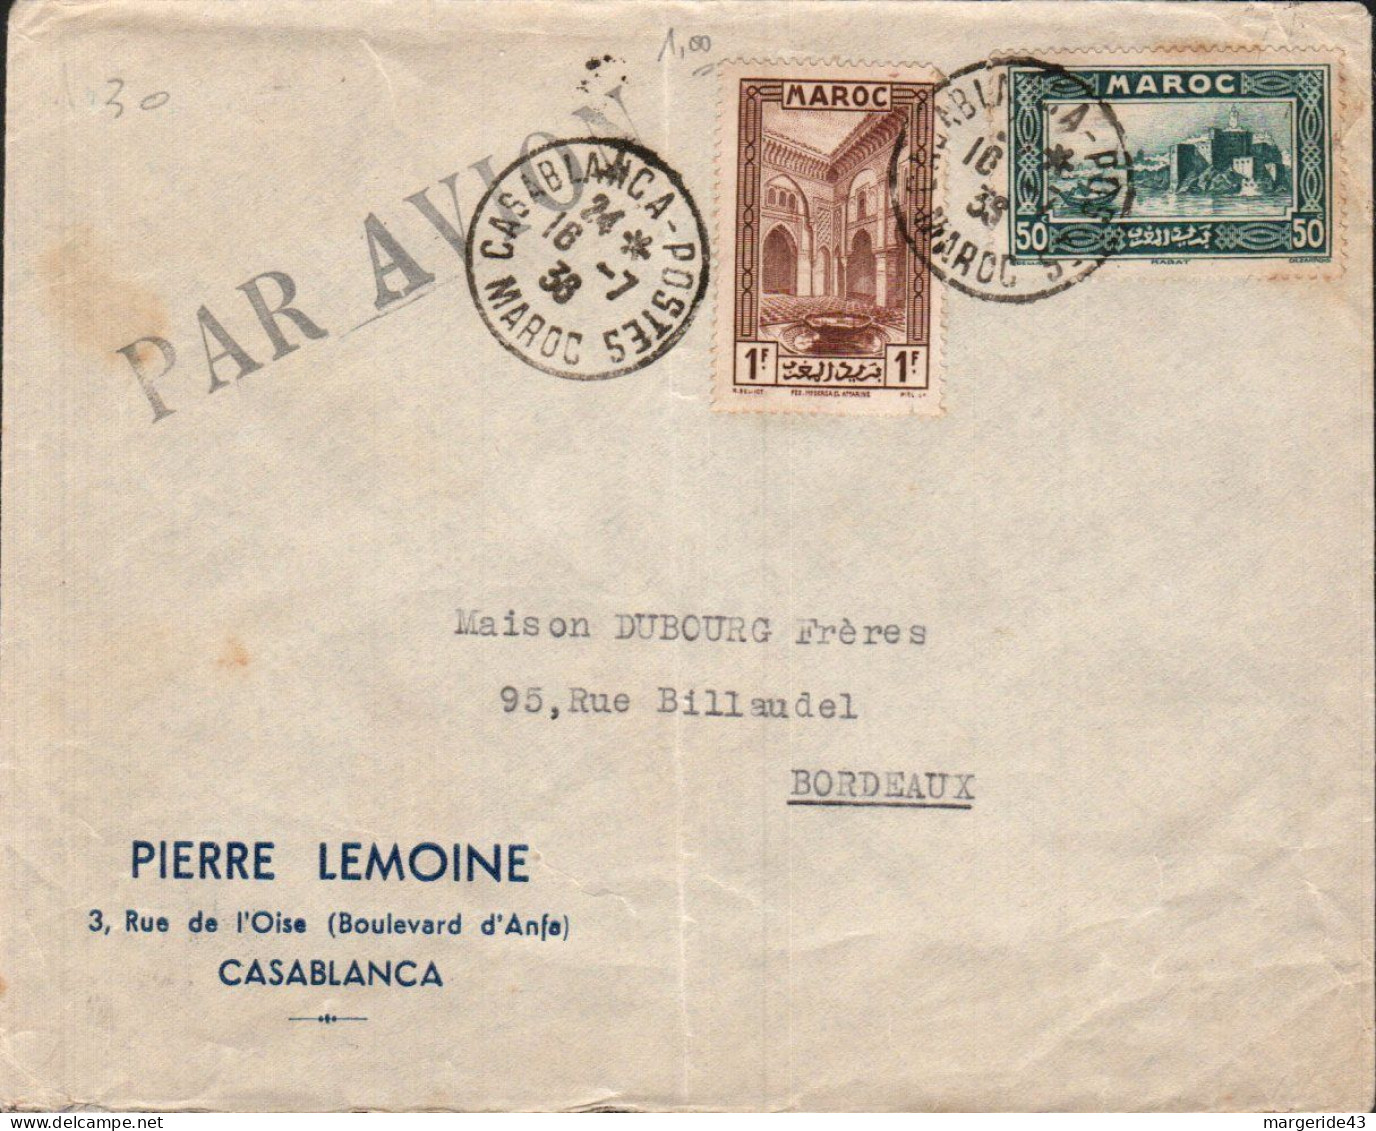 MAROC AFFRANCHISSEMENT COMPOSE SUR LETTRE A EN TETE POUR LA FRANCE 1938 - Covers & Documents